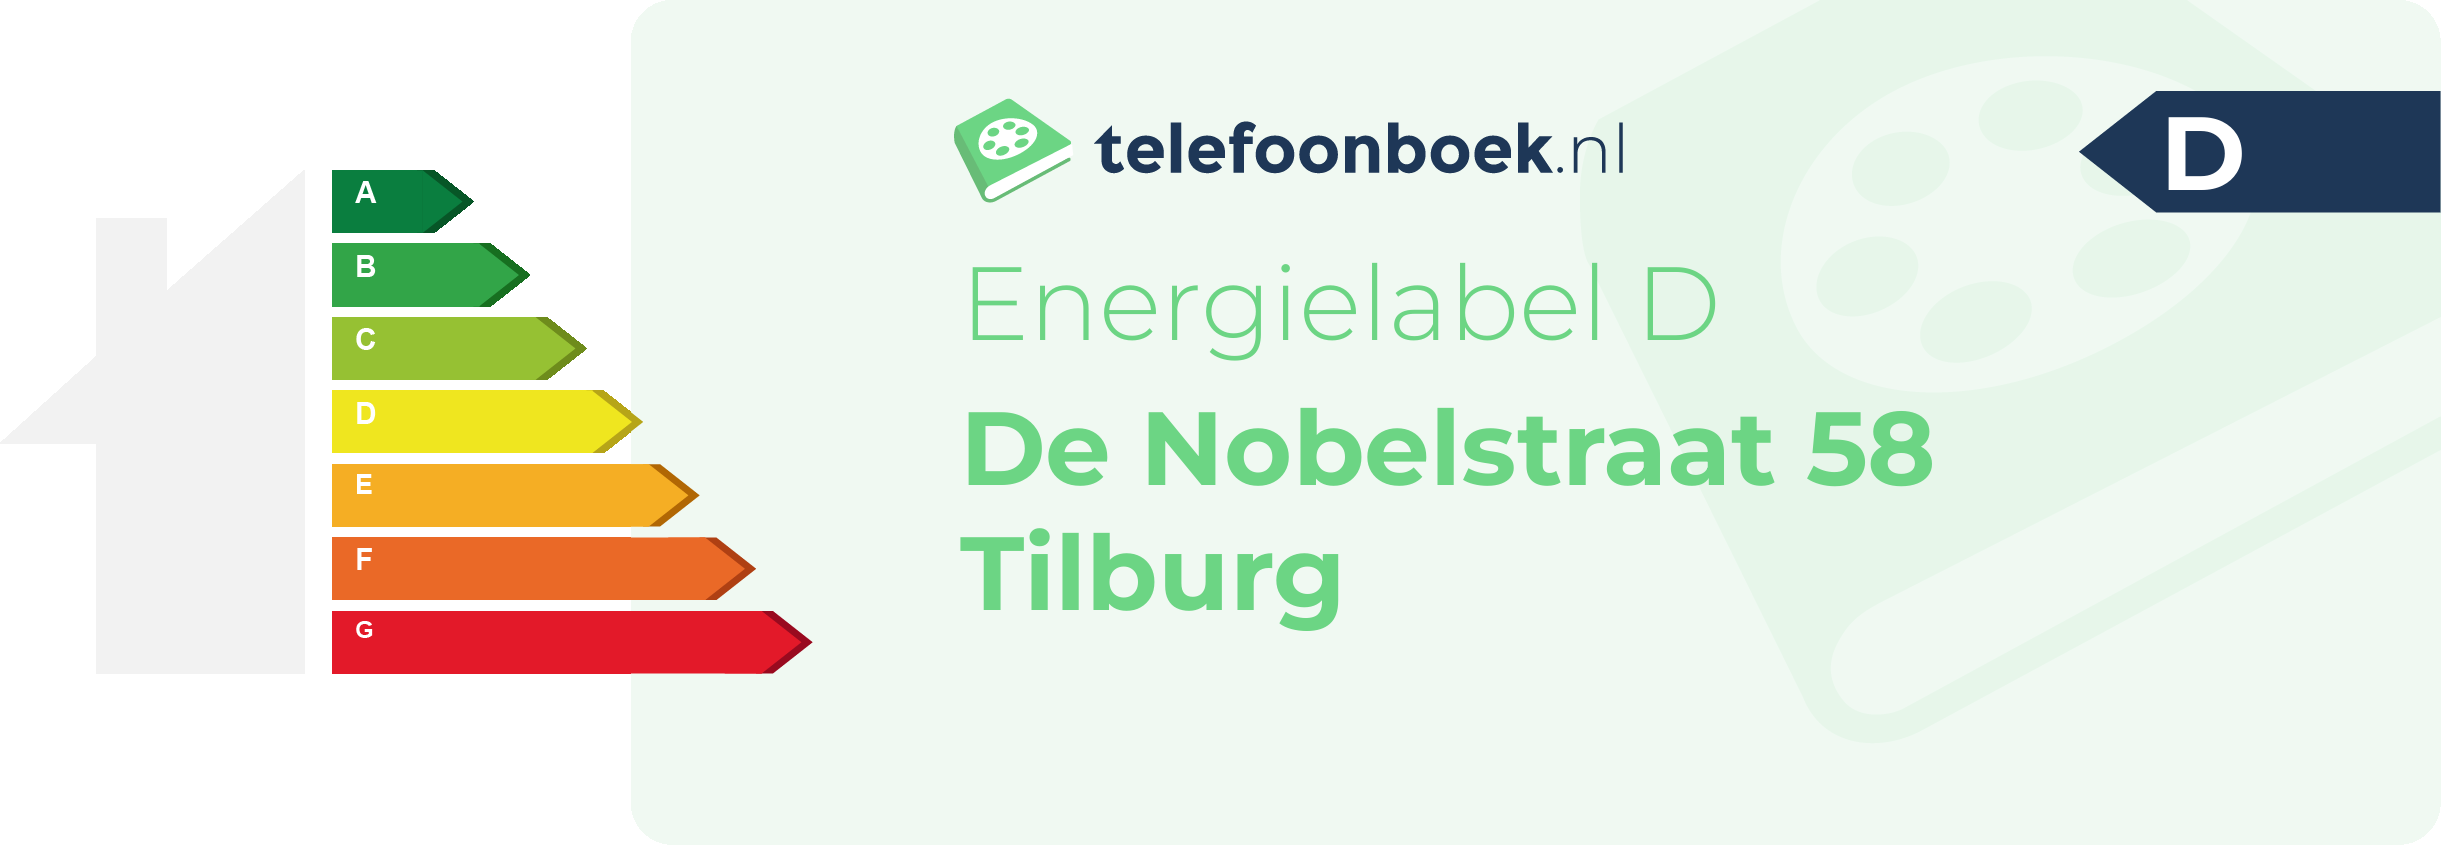 Energielabel De Nobelstraat 58 Tilburg